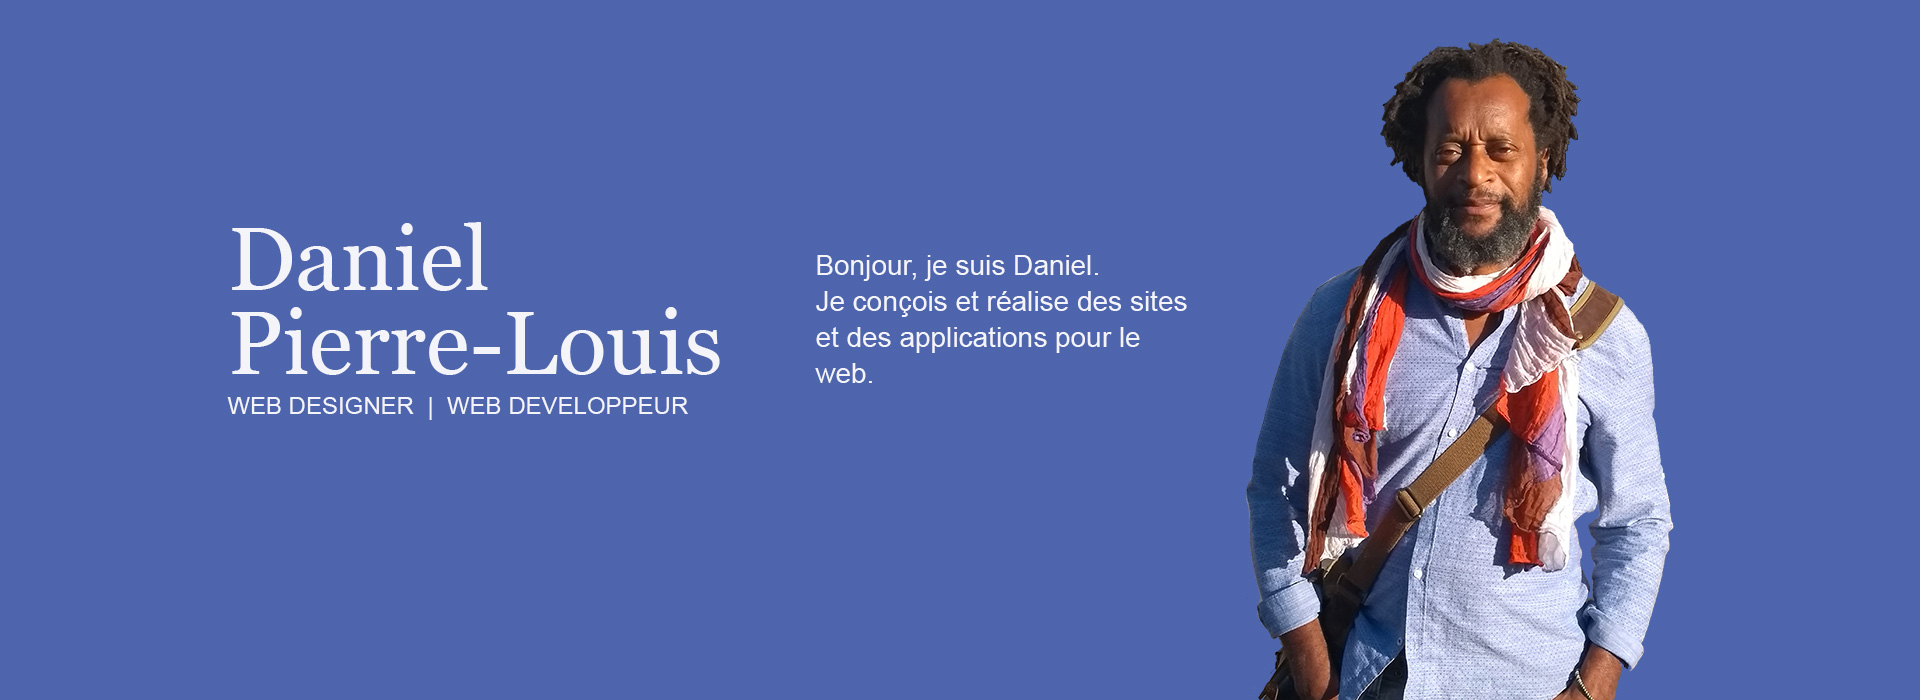 Daniel Pierre-Louis